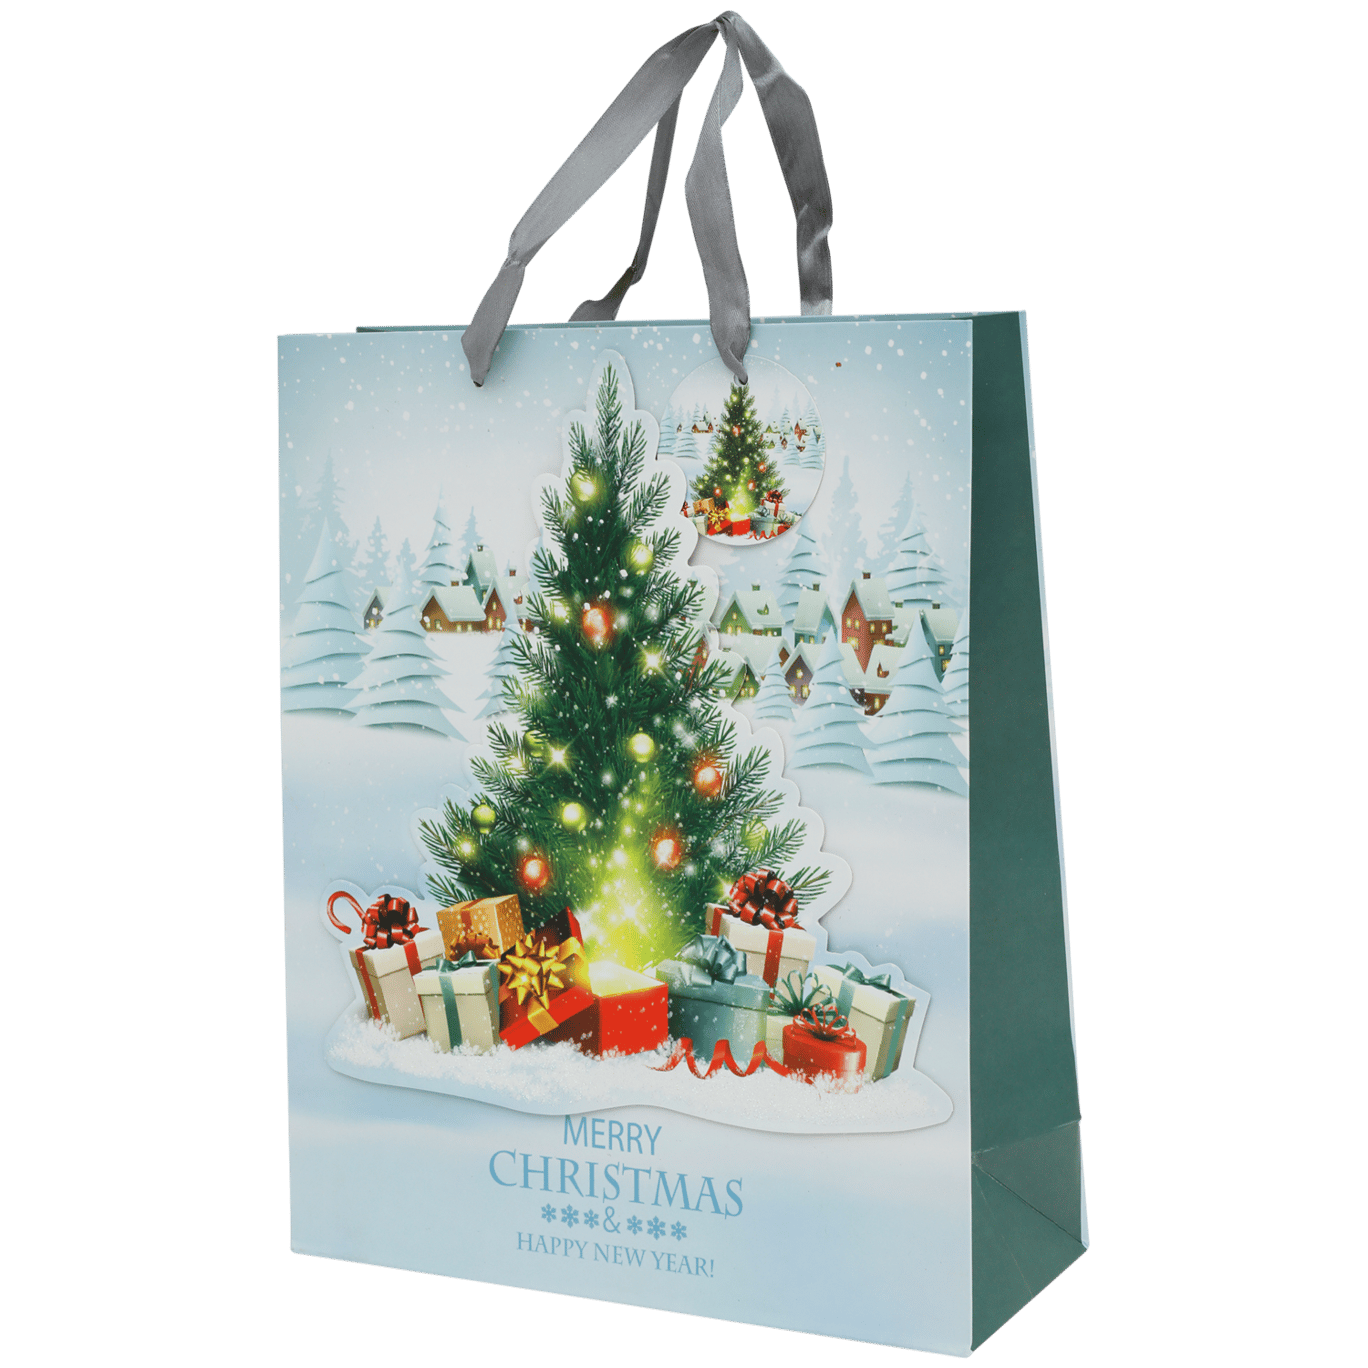 HOLIDAY amico in plastica sacco regalo di Natale 1.1 metri di altezza da Amscan 